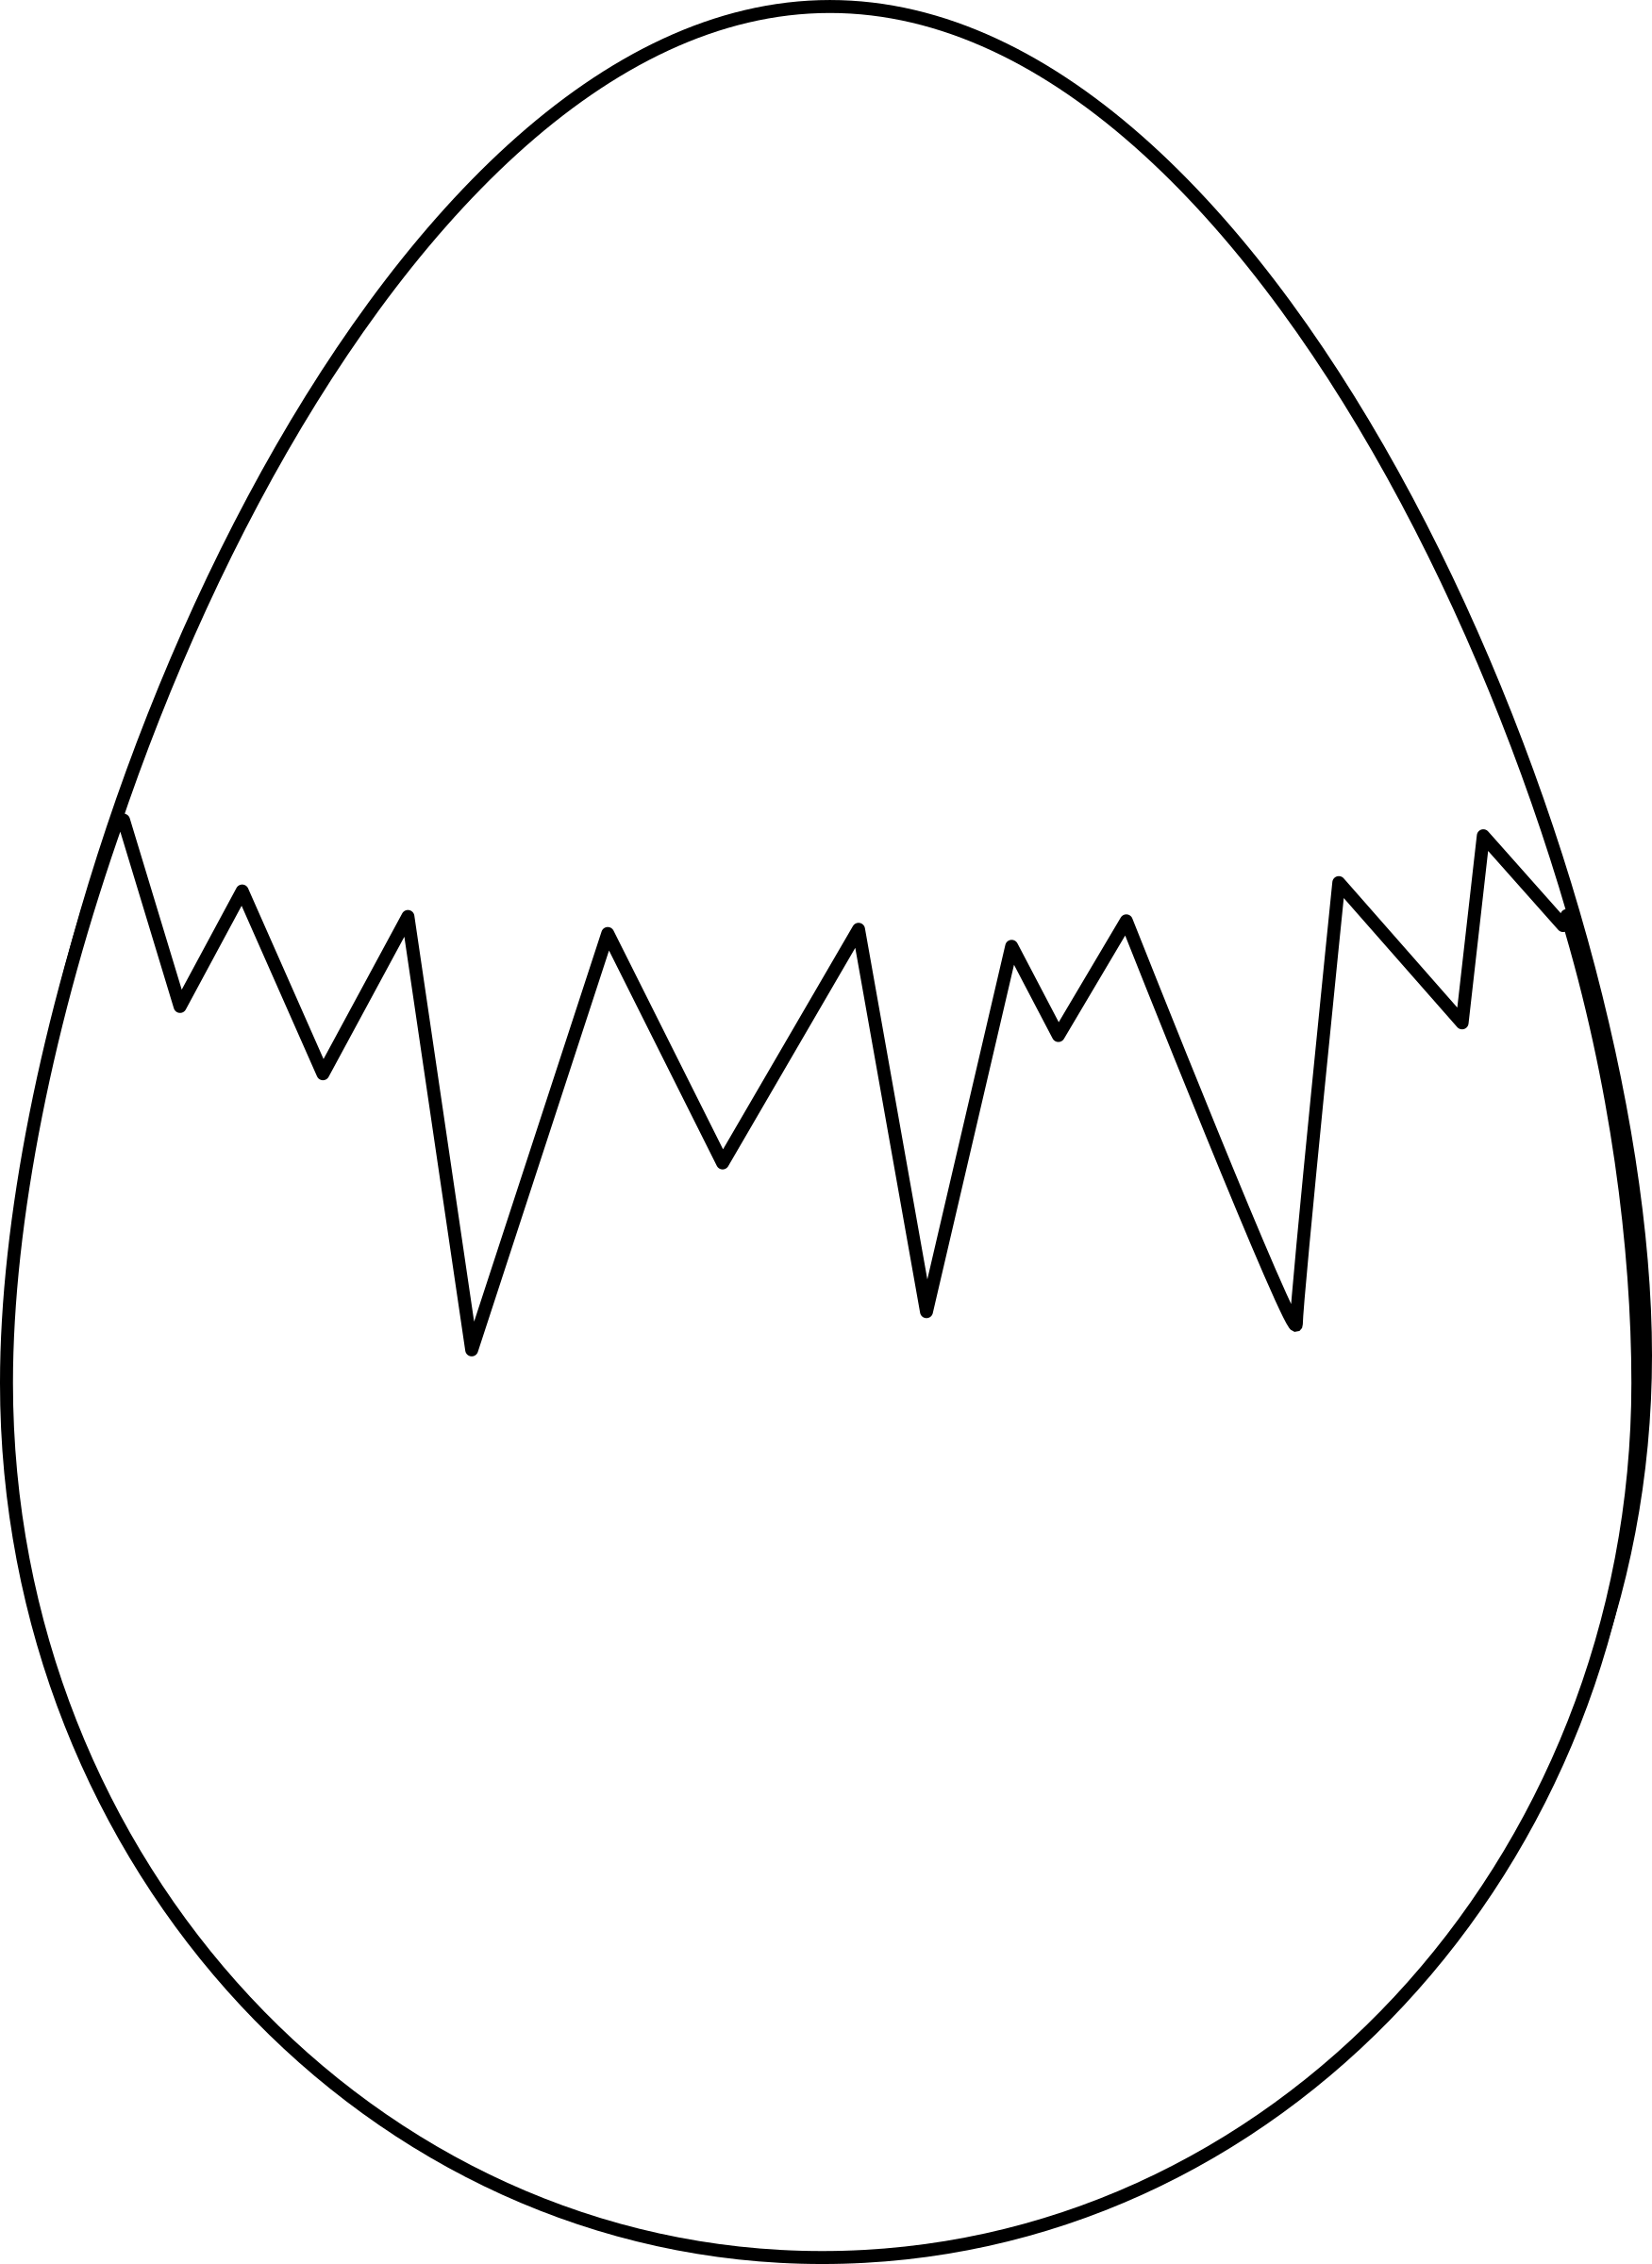 Распечатать раскраску яйца. Яйцо раскраска. Яйцо раскраска для детей. Раскраски пасочных яиц. Пасхальное яйцо раскраска.